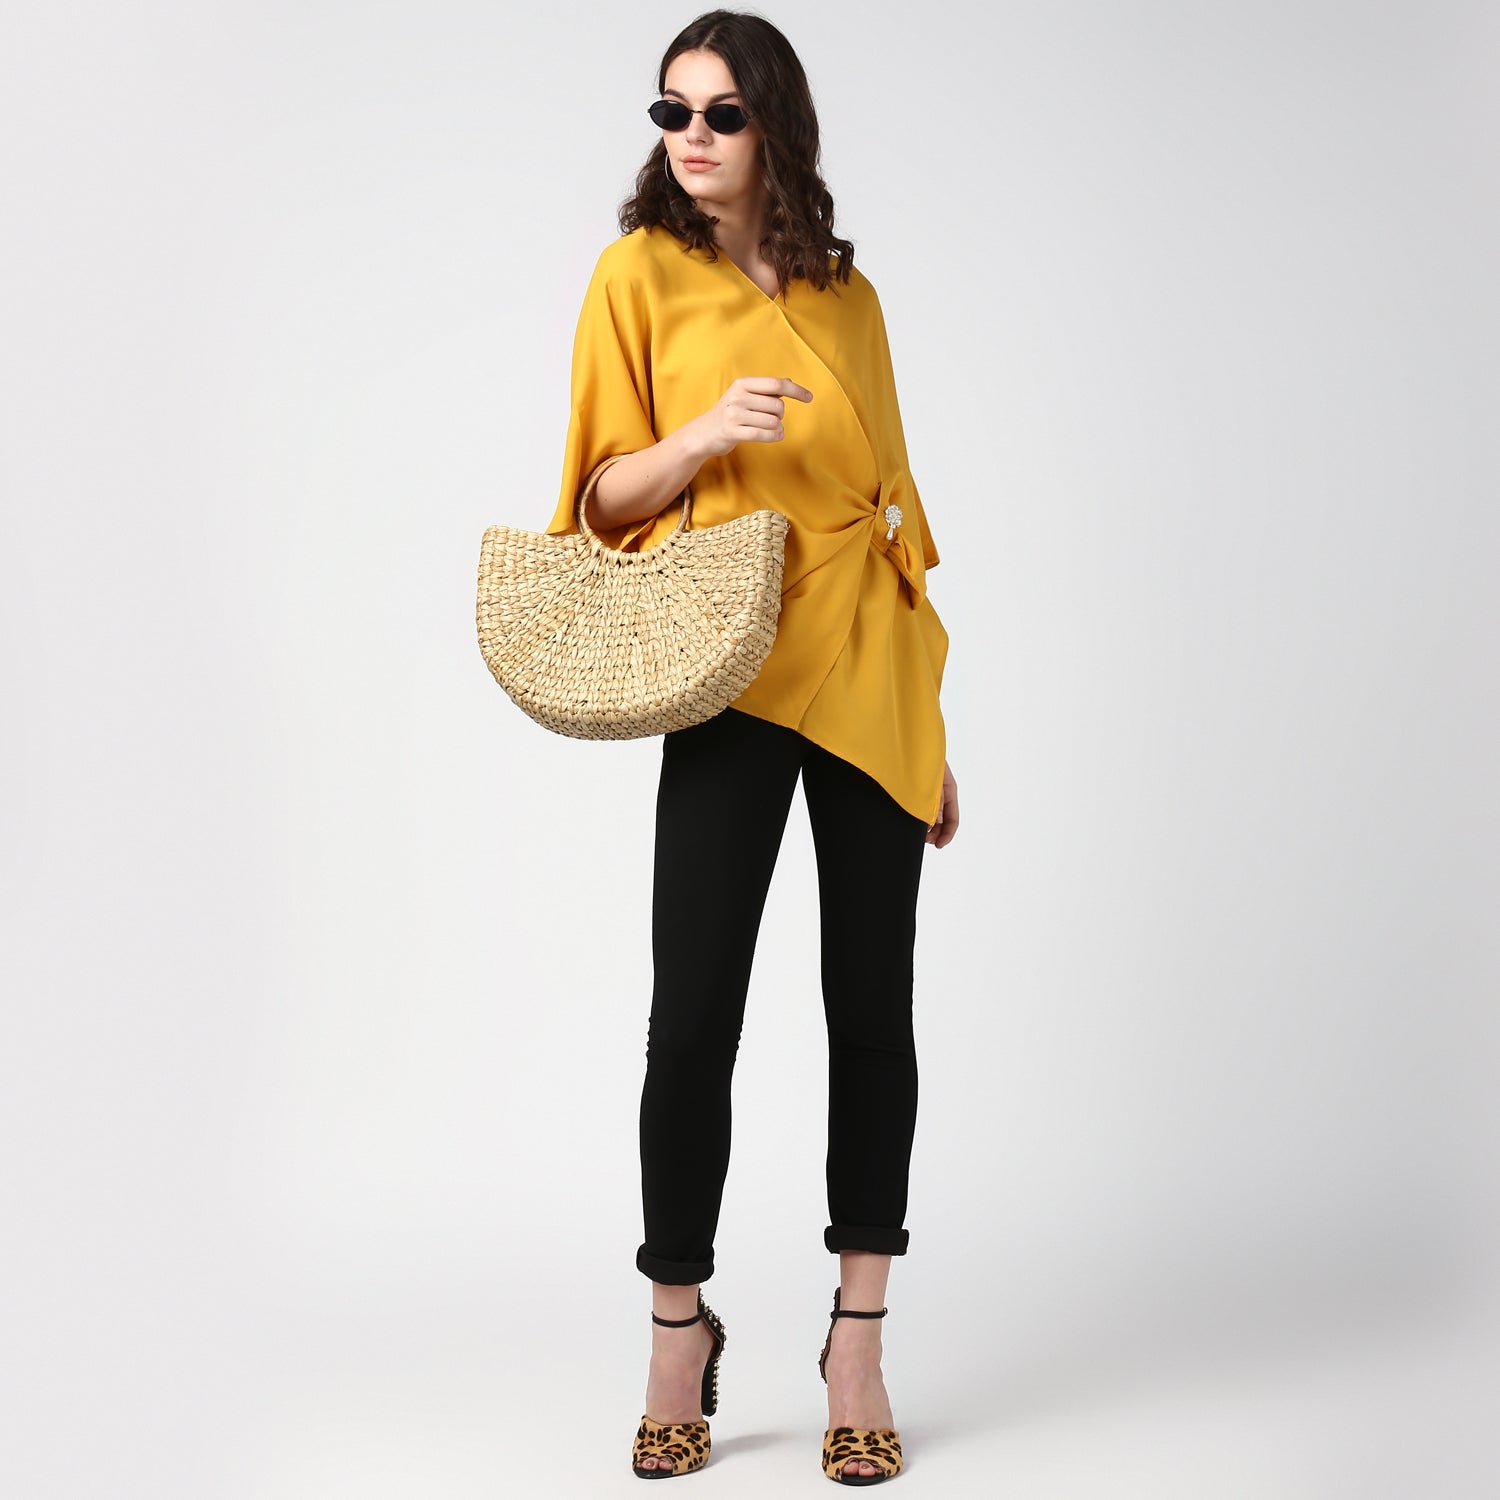 Women's Yellow Side Drape Top with Brooch - StyleStone